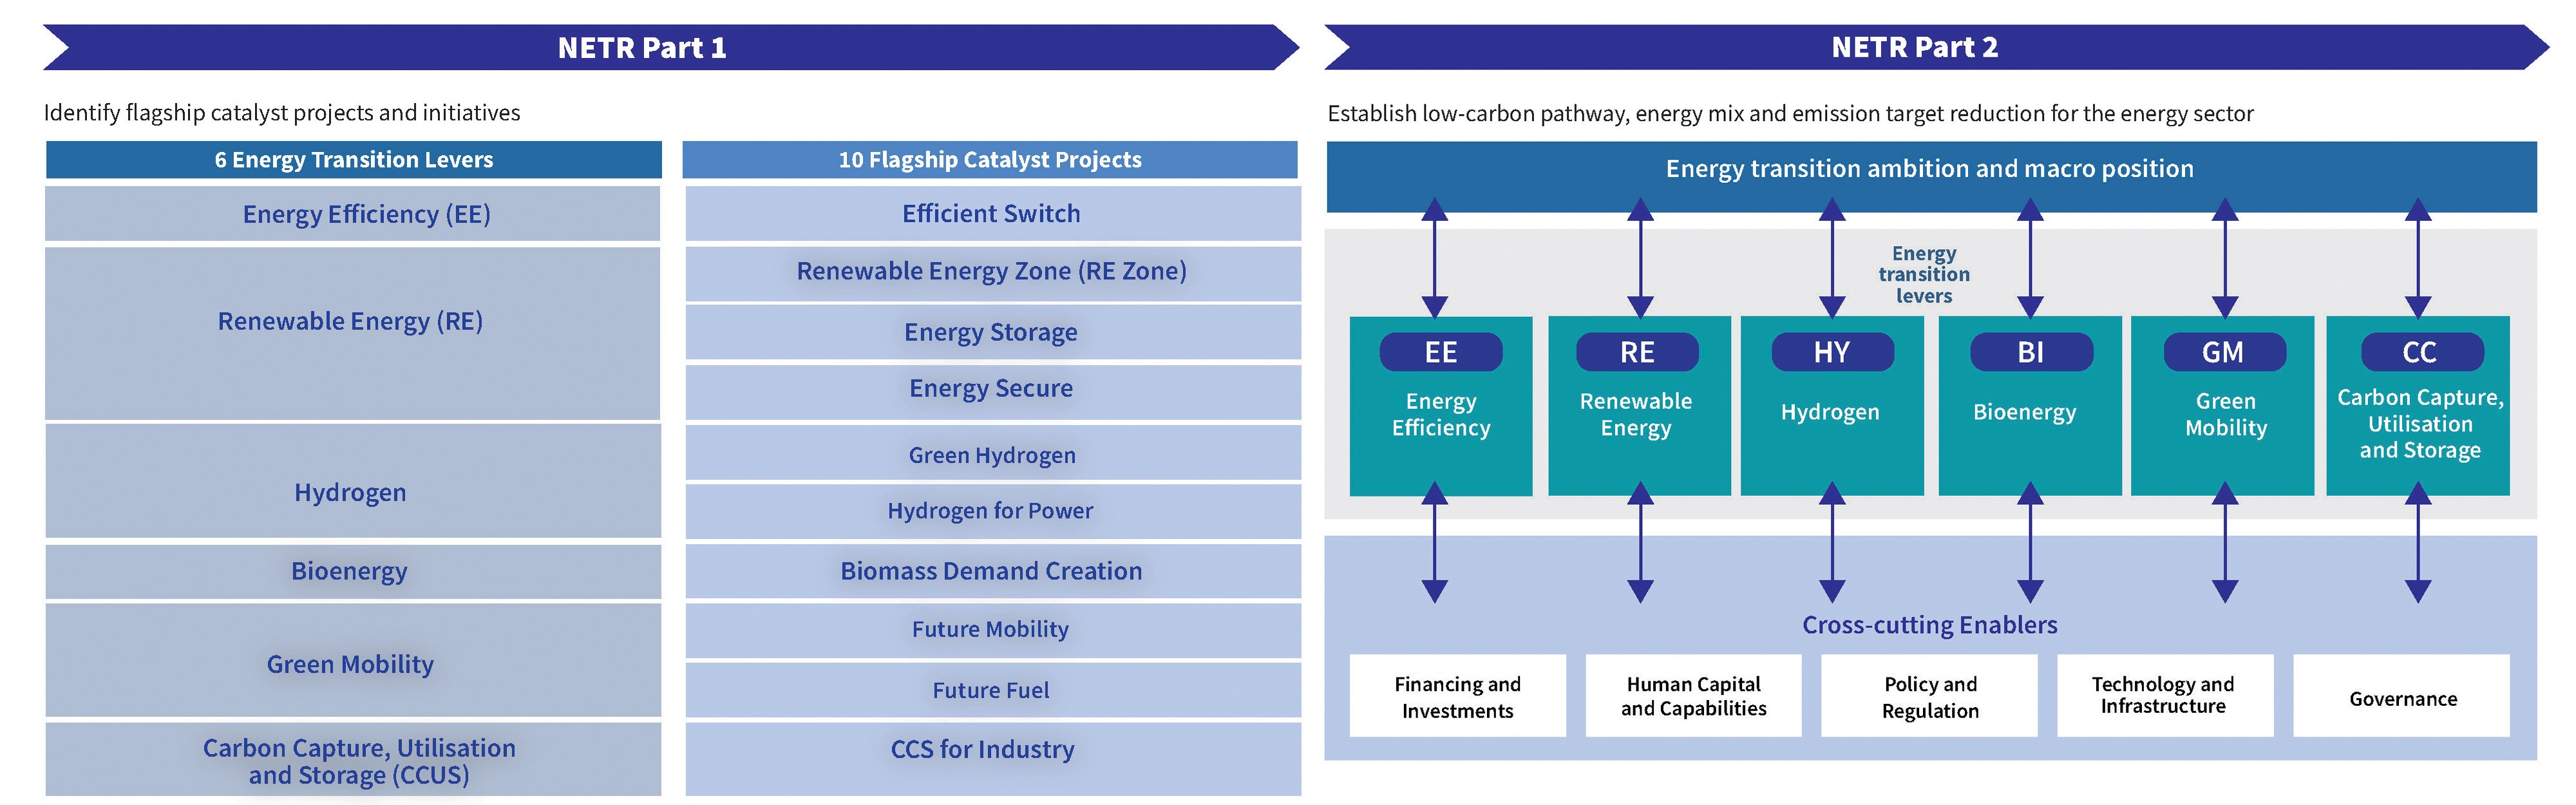 国家能源转型路线图 (NETR) 制定（第 1 部分和第 2 部分） 资料来源：NETR